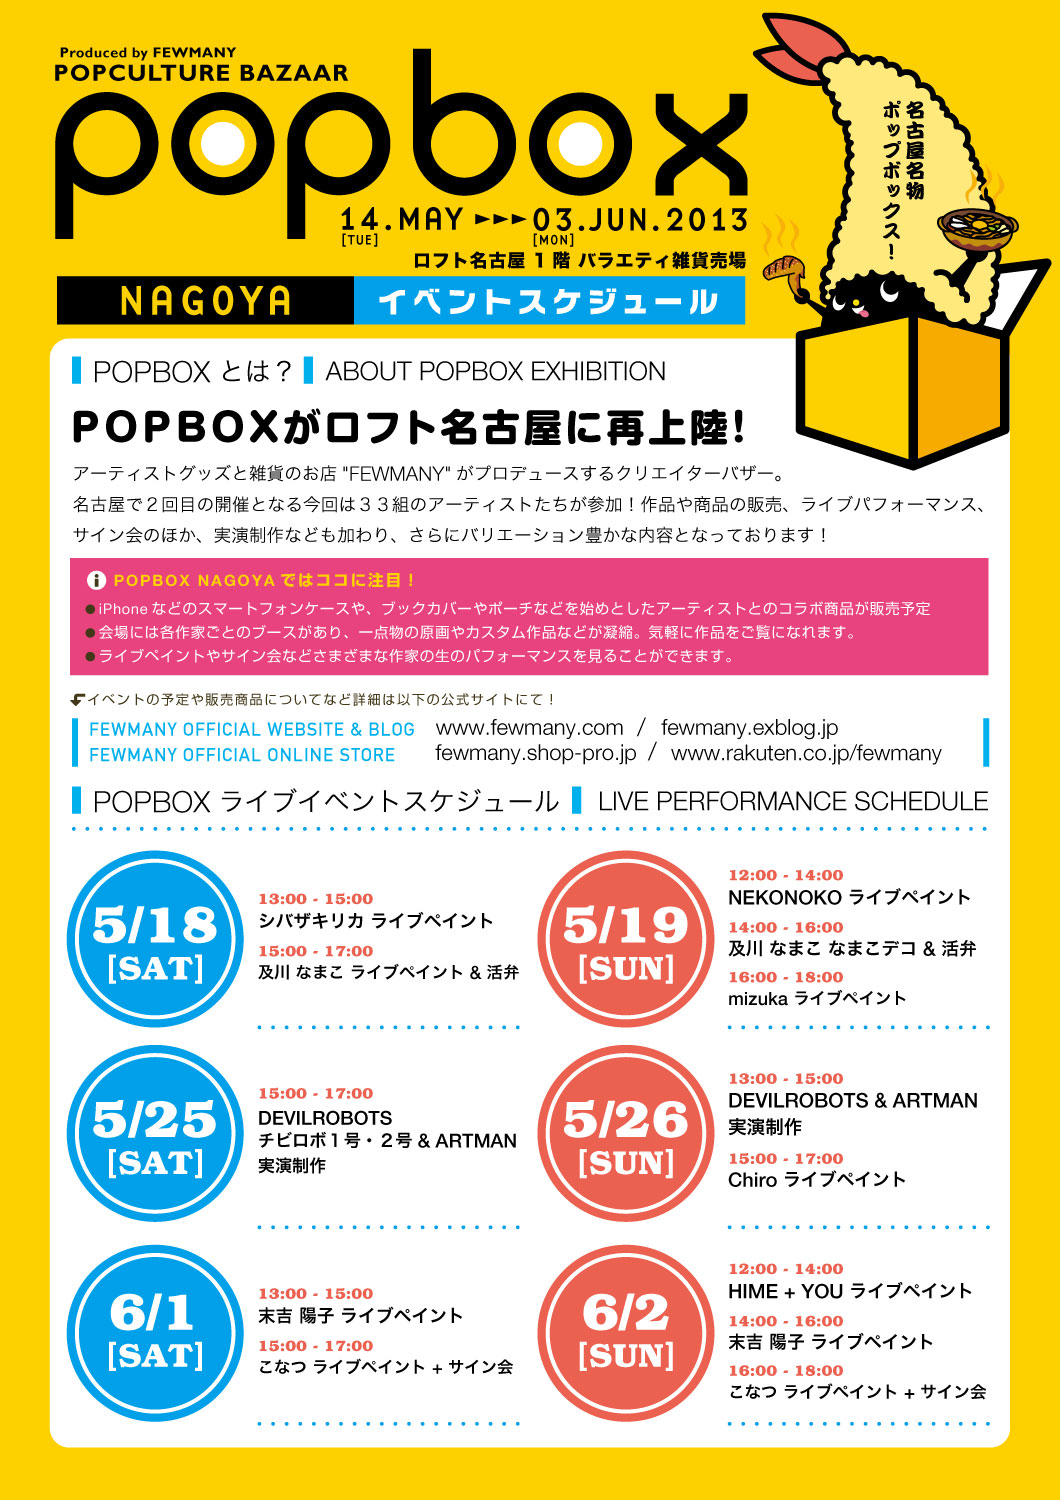 POPBOX NAGOYA 開催のお知らせ！！！_f0010033_18425968.jpg